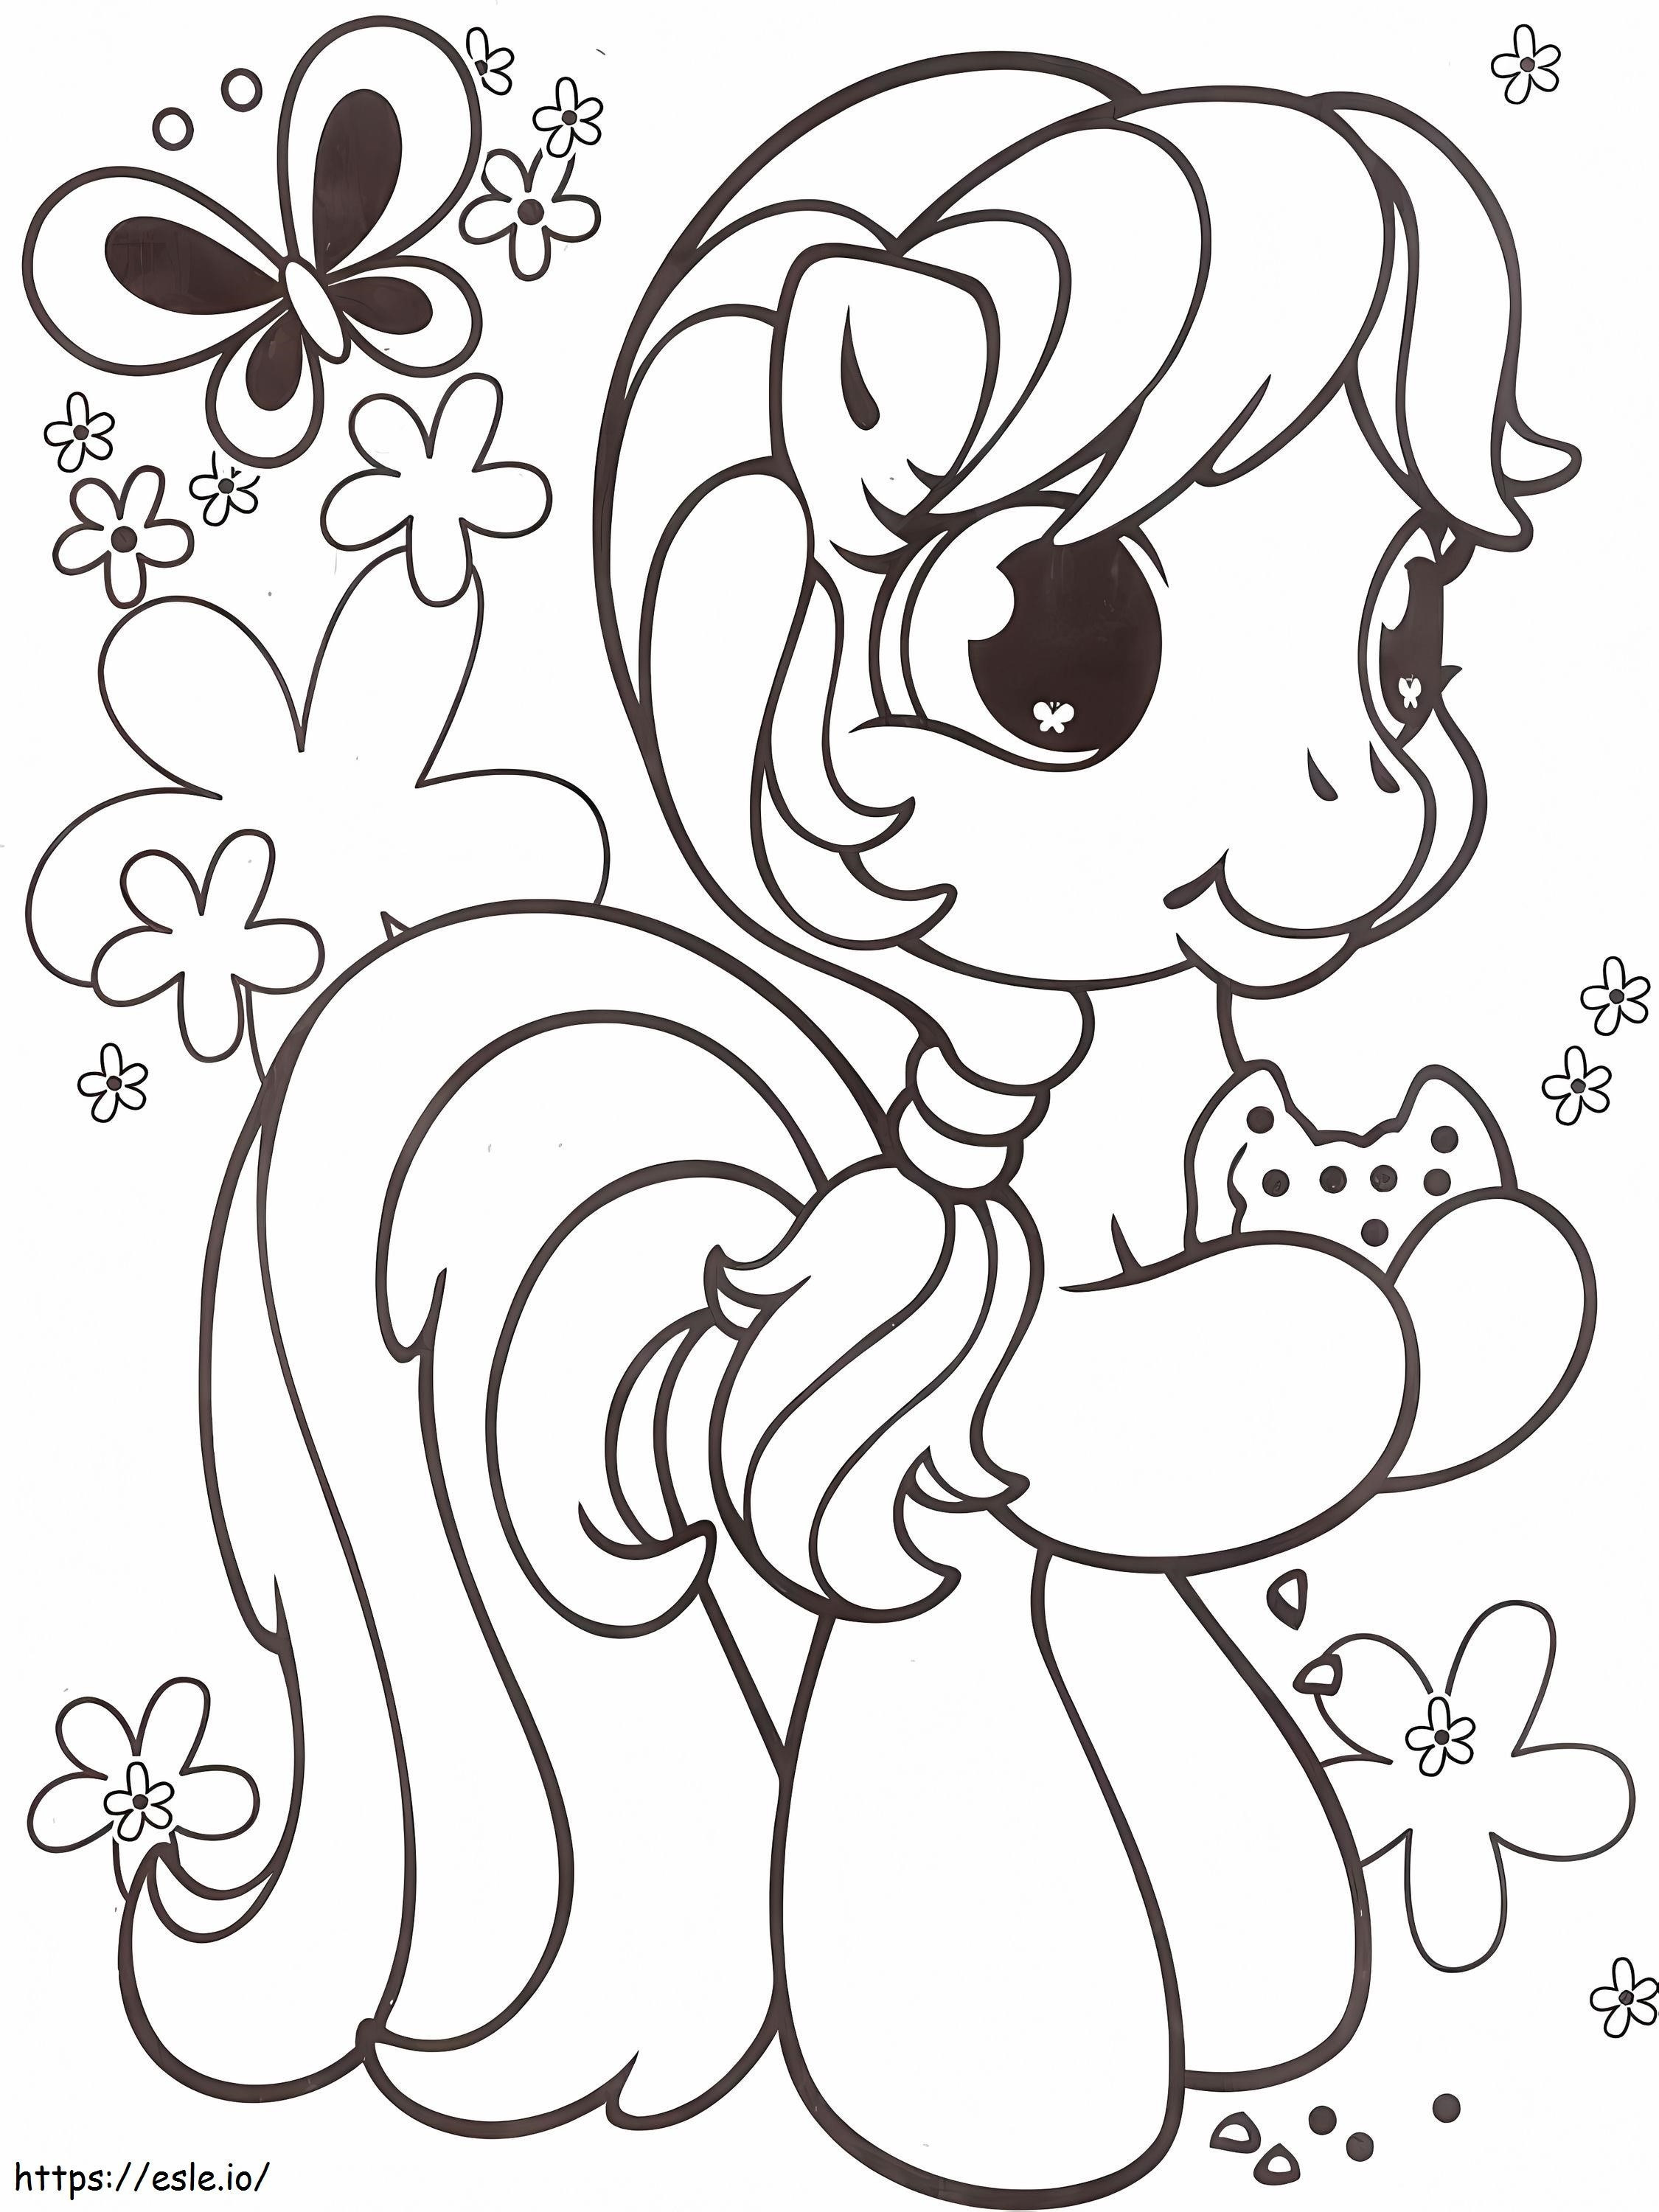 Kawaii Pony coloring page